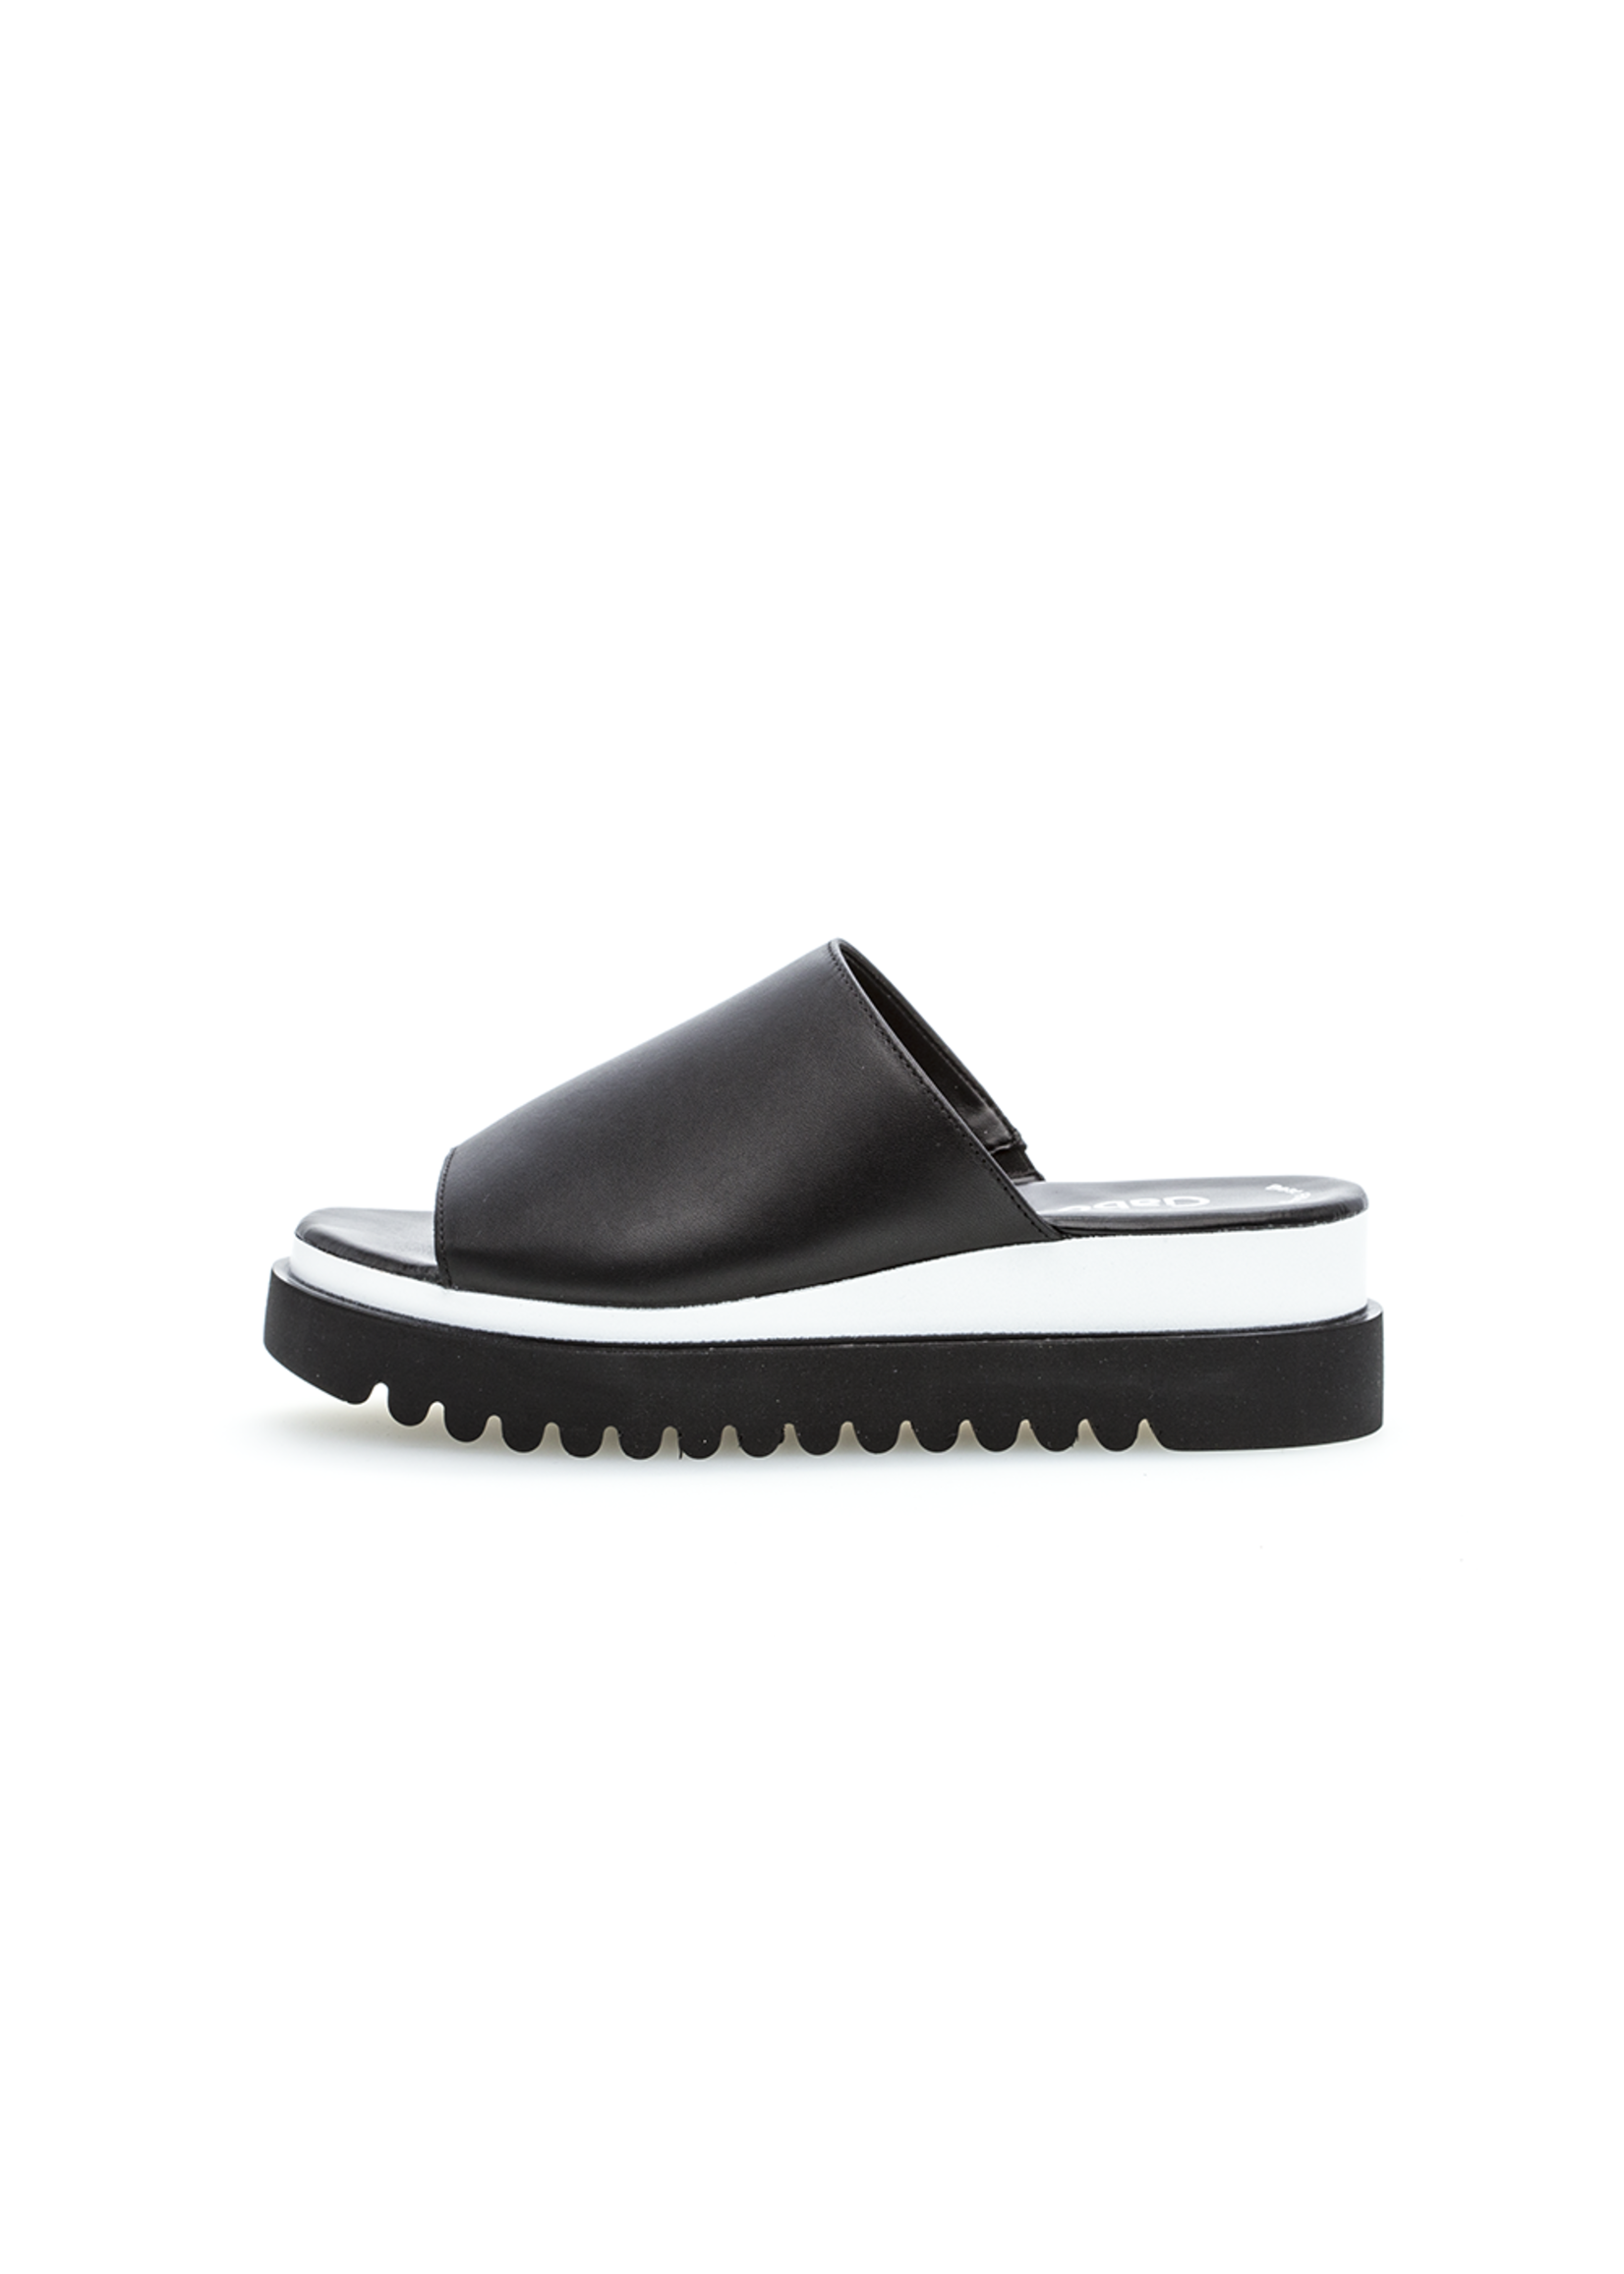 Gabor Platform Slide Black Nappa Leather by Gabor  8.5 Only Final Sale